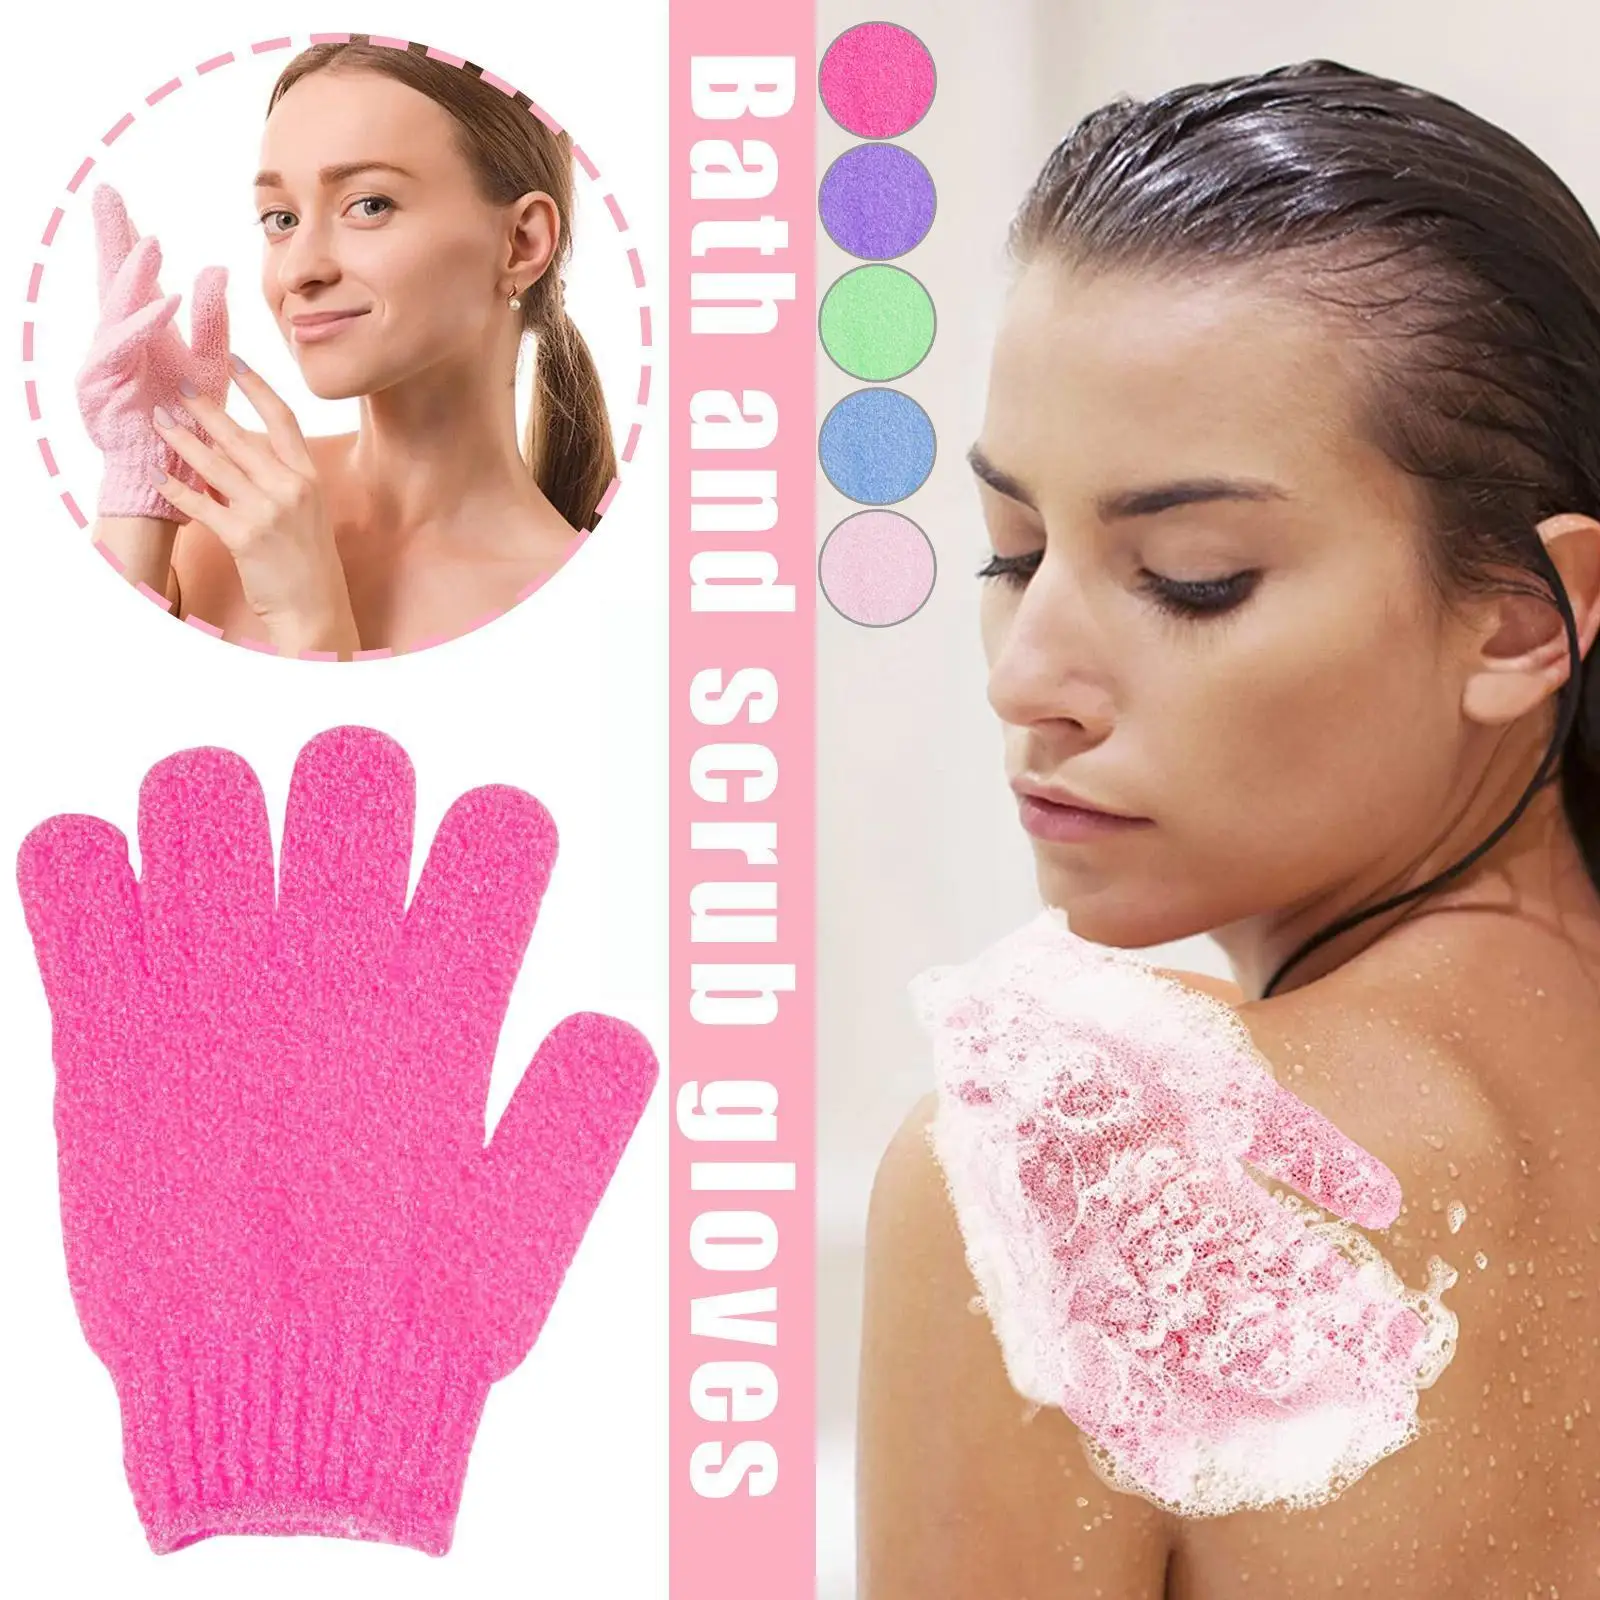 

Ванна для пилинга отшелушивающая варежка перчатка для душа скраб перчатки устойчивая Массажная губка для тела средство для мытья кожи G5J9